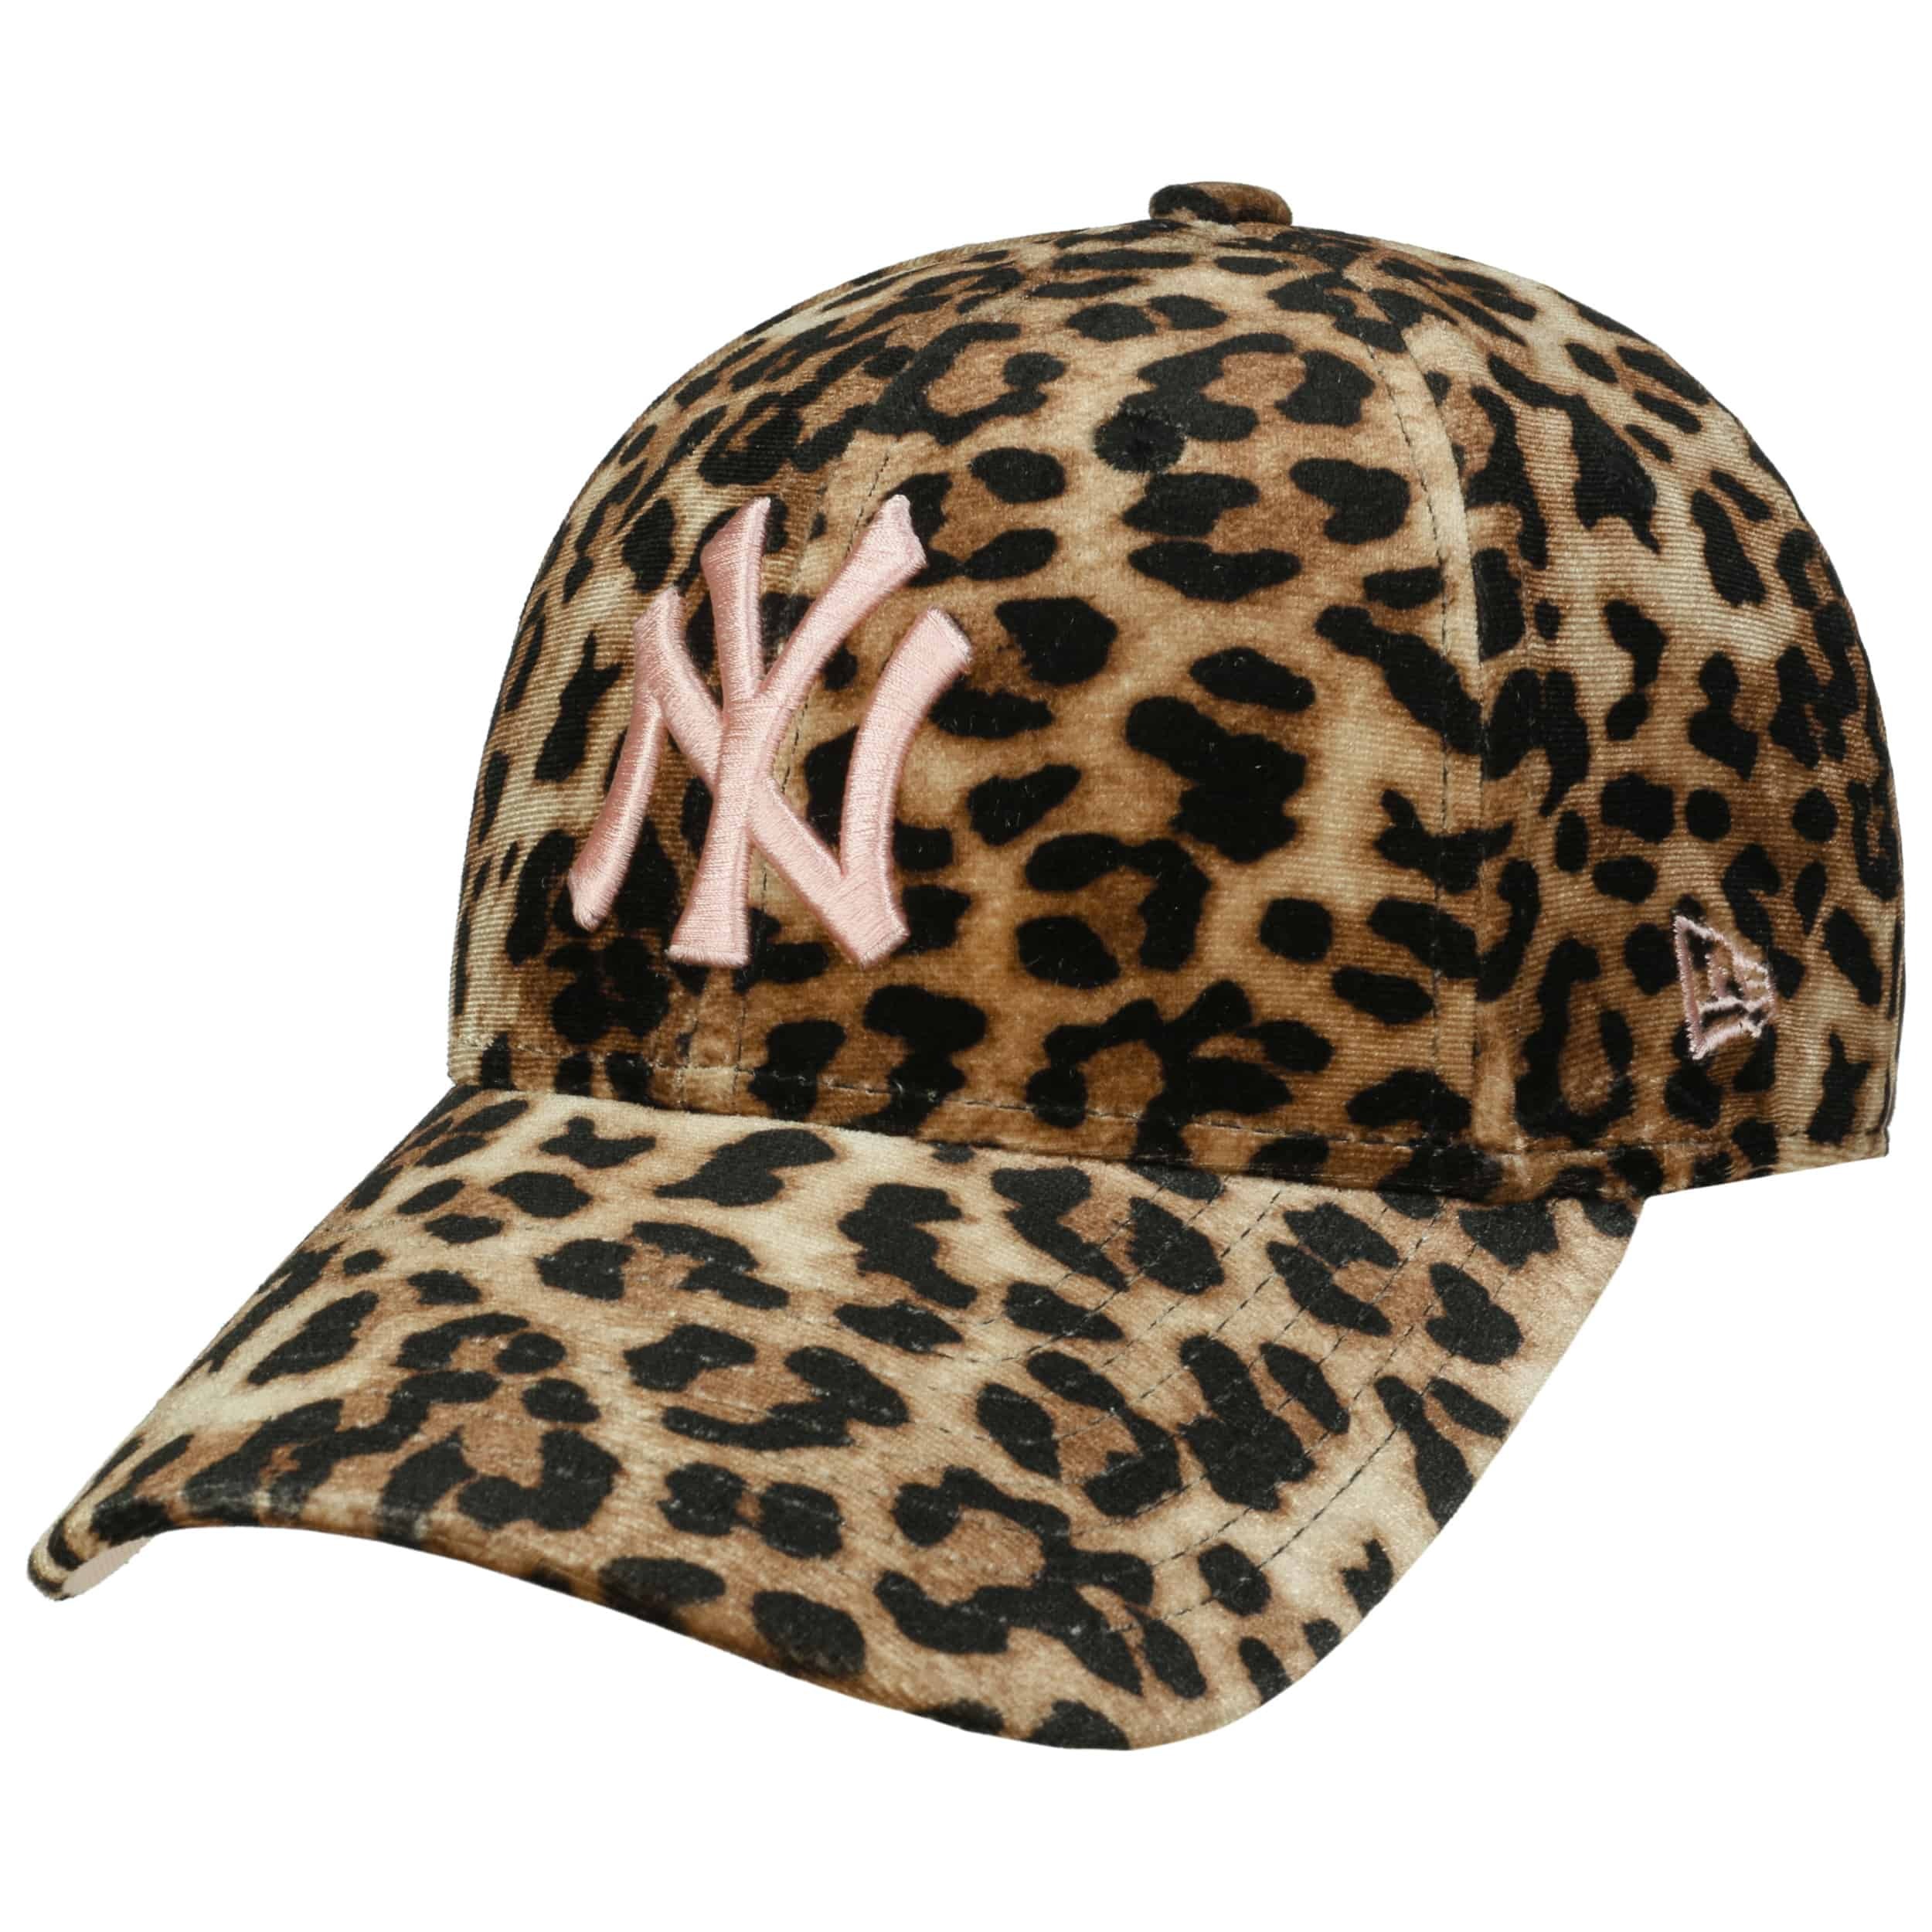 Acheter la casquette New Era 39Thirty marron des Yankees